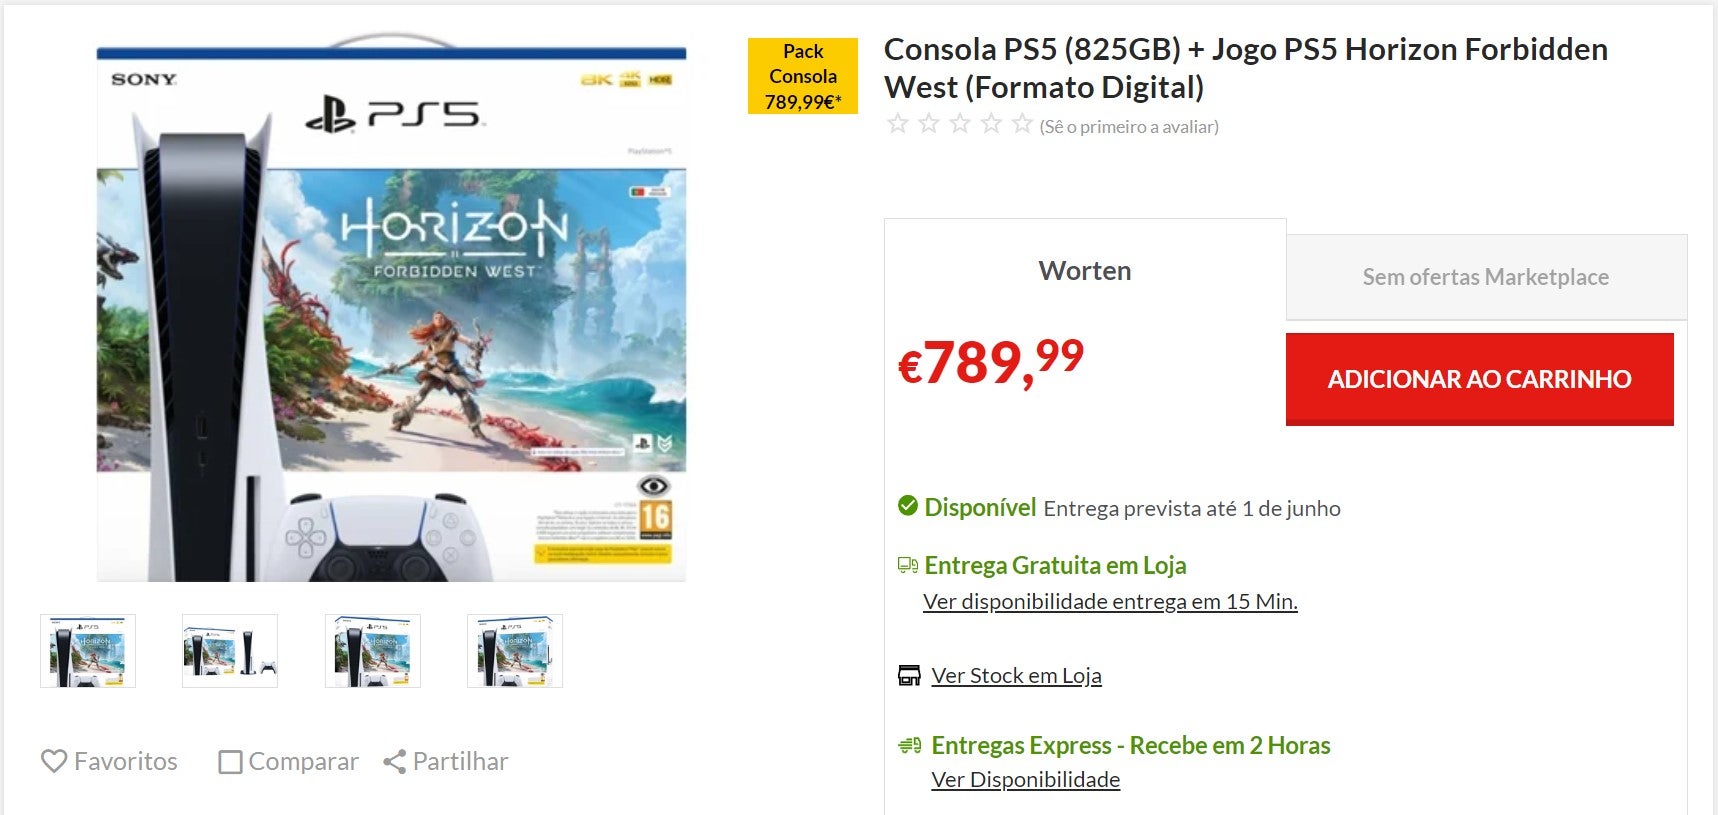 Imagem para Worten tem stock de PS5 e está a vender bundle por €789,99